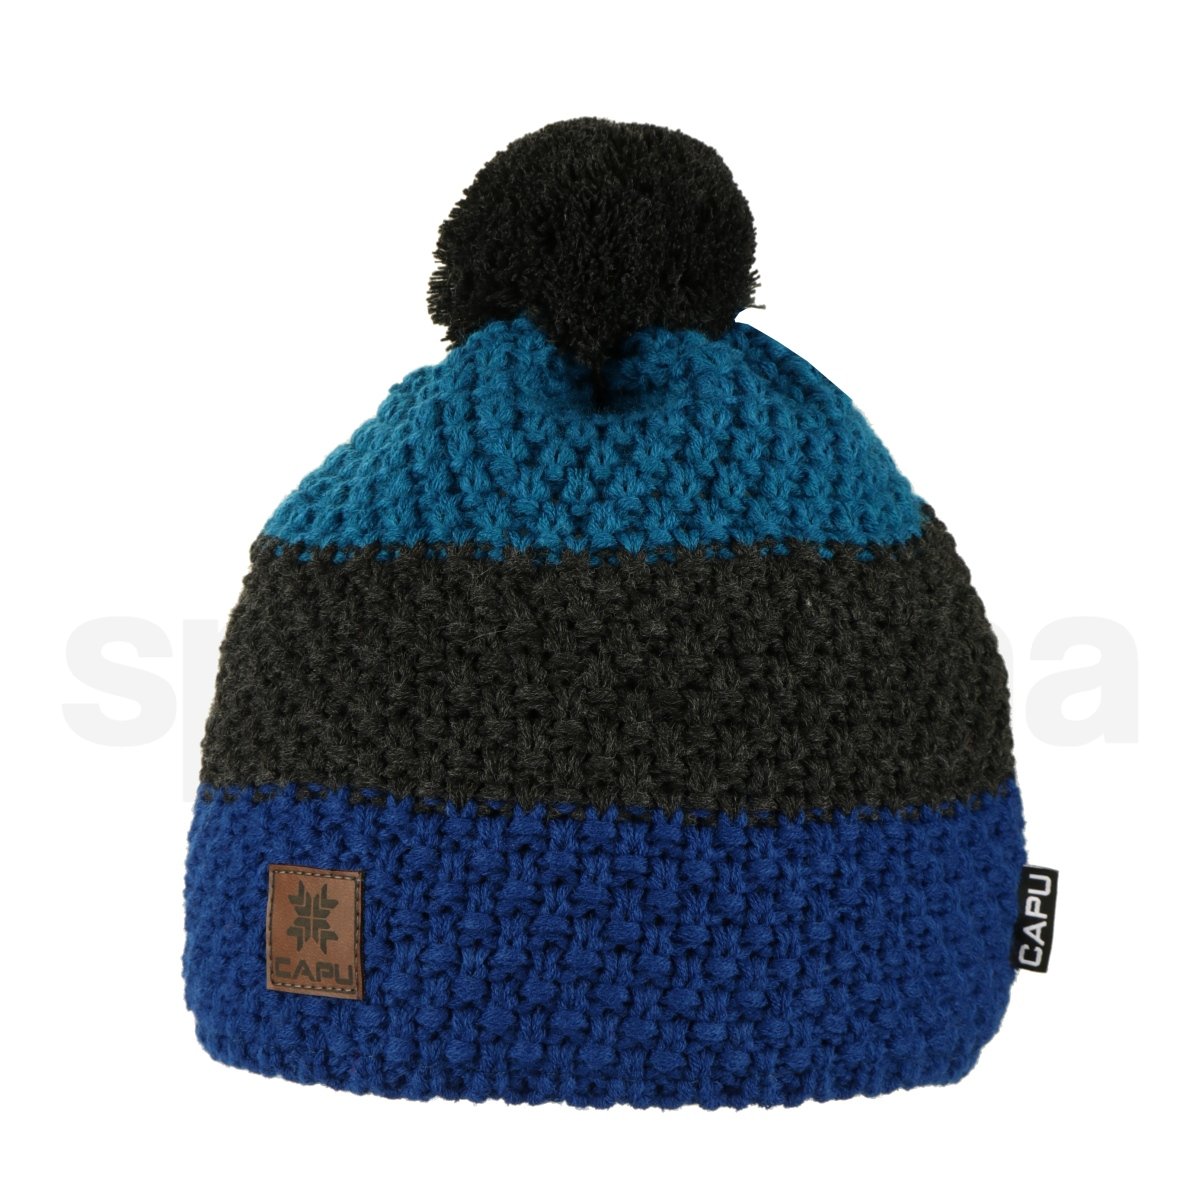 Čepice Capu 425D M - modrá/černá/modrá